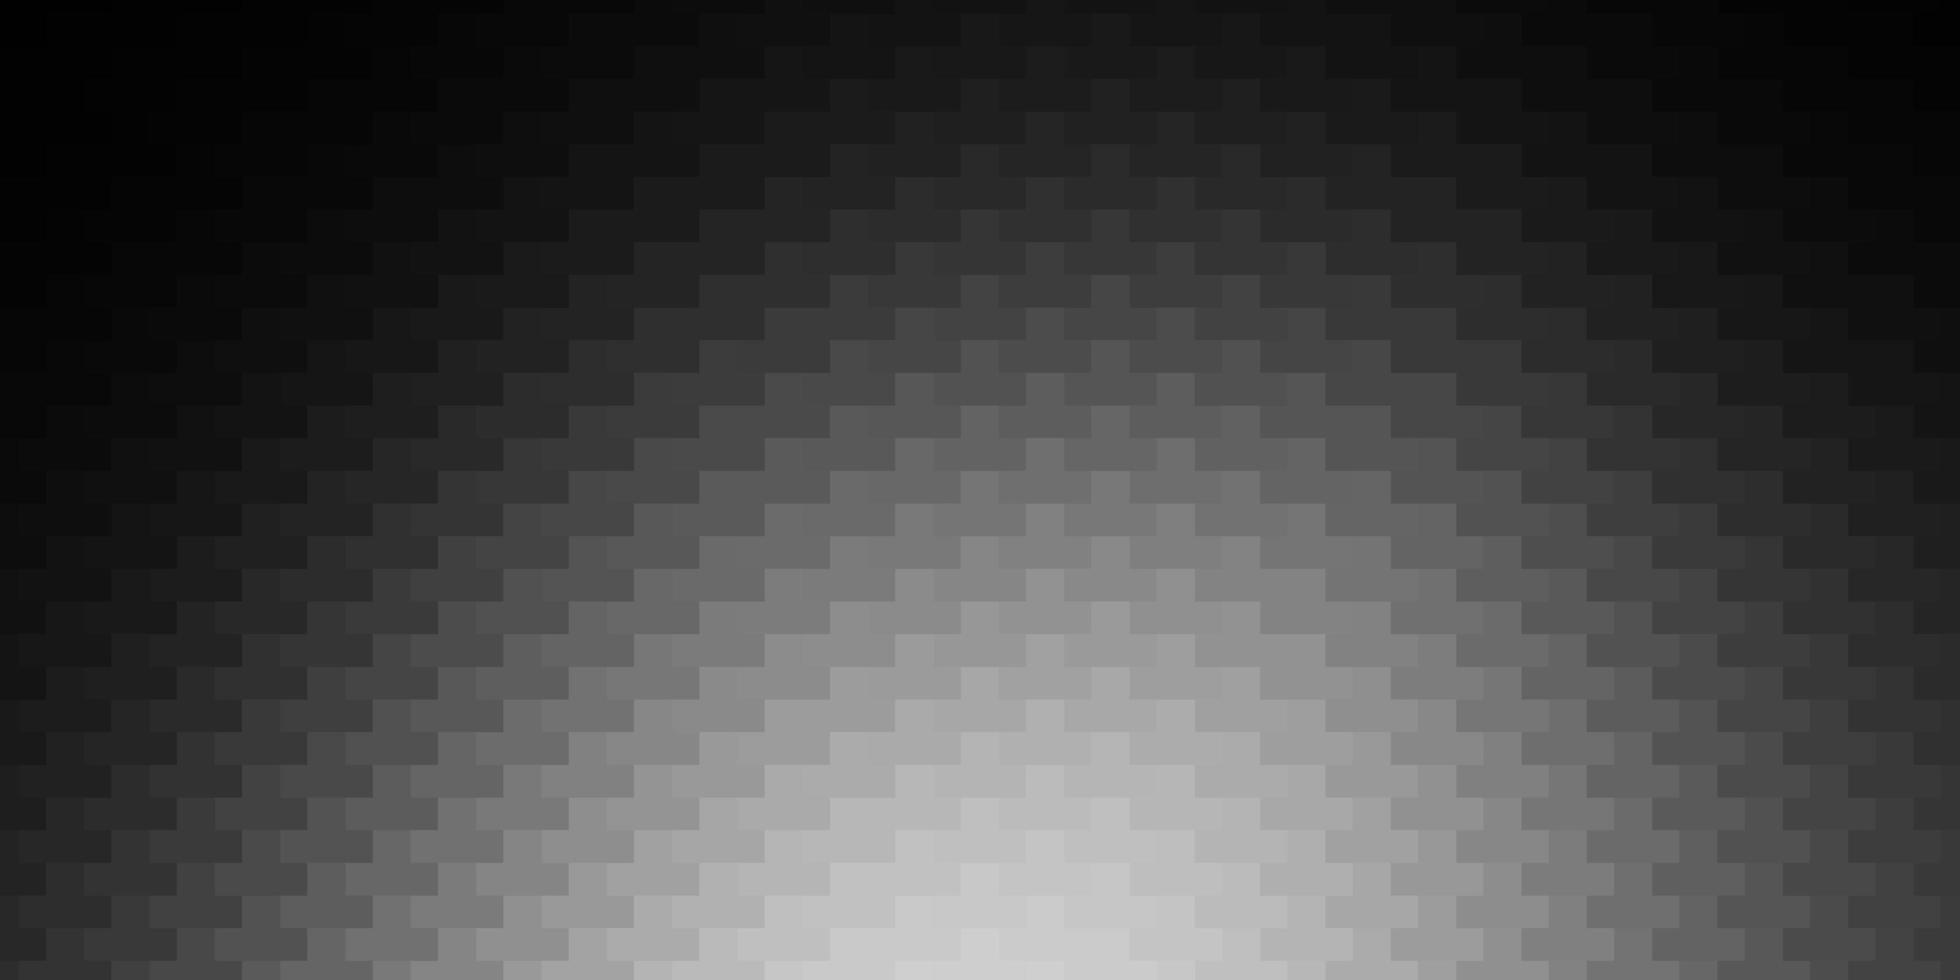 sfondo vettoriale grigio scuro con rettangoli. design moderno con rettangoli in stile astratto. modello per spot pubblicitari, annunci.